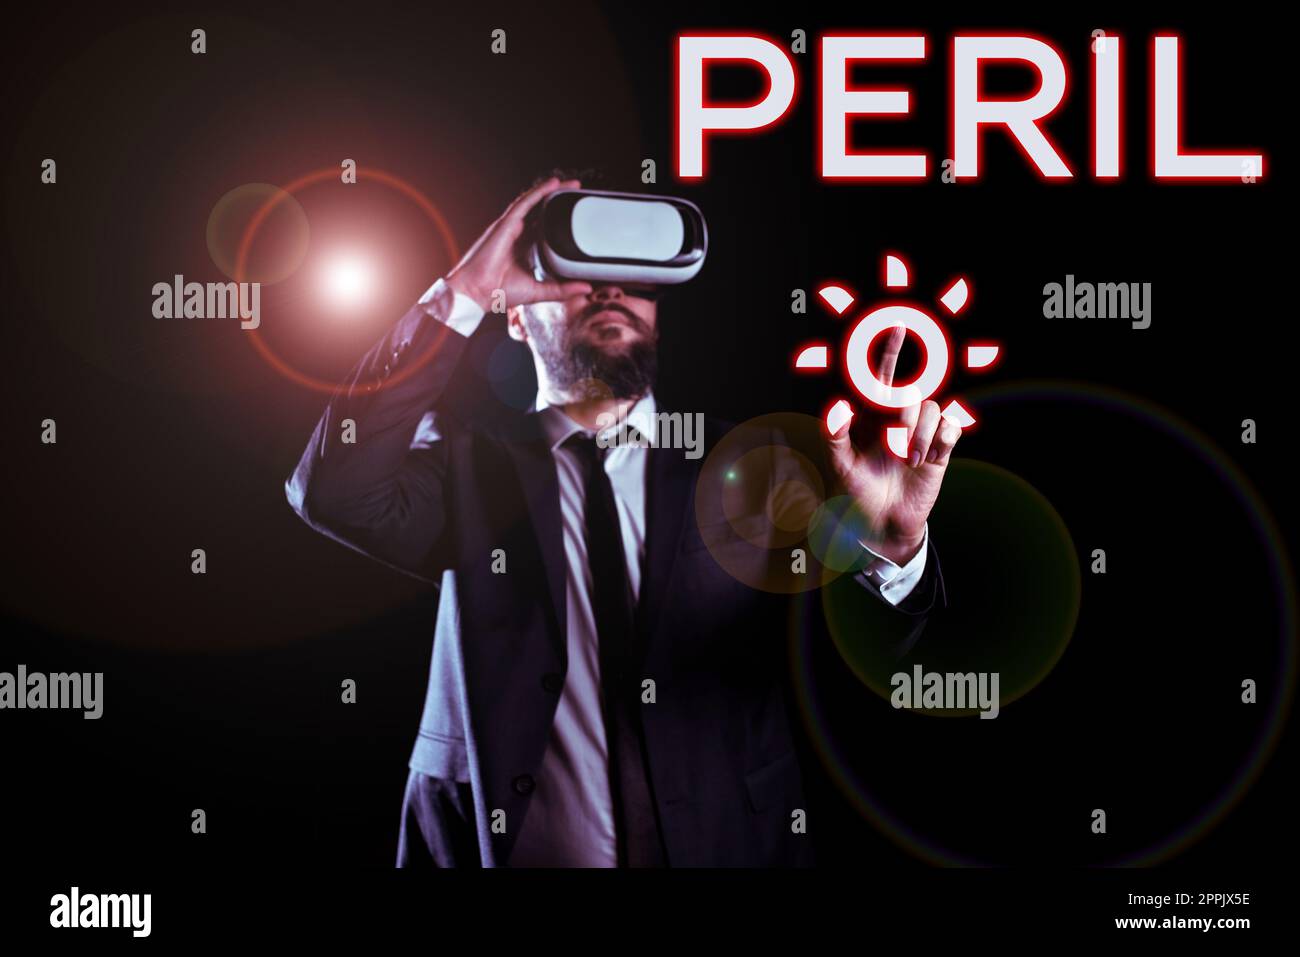 Scrittura visualizzazione testo Peril. Il concetto aziendale indica qualcosa di estremamente difficile, pericoloso o pericoloso Foto Stock